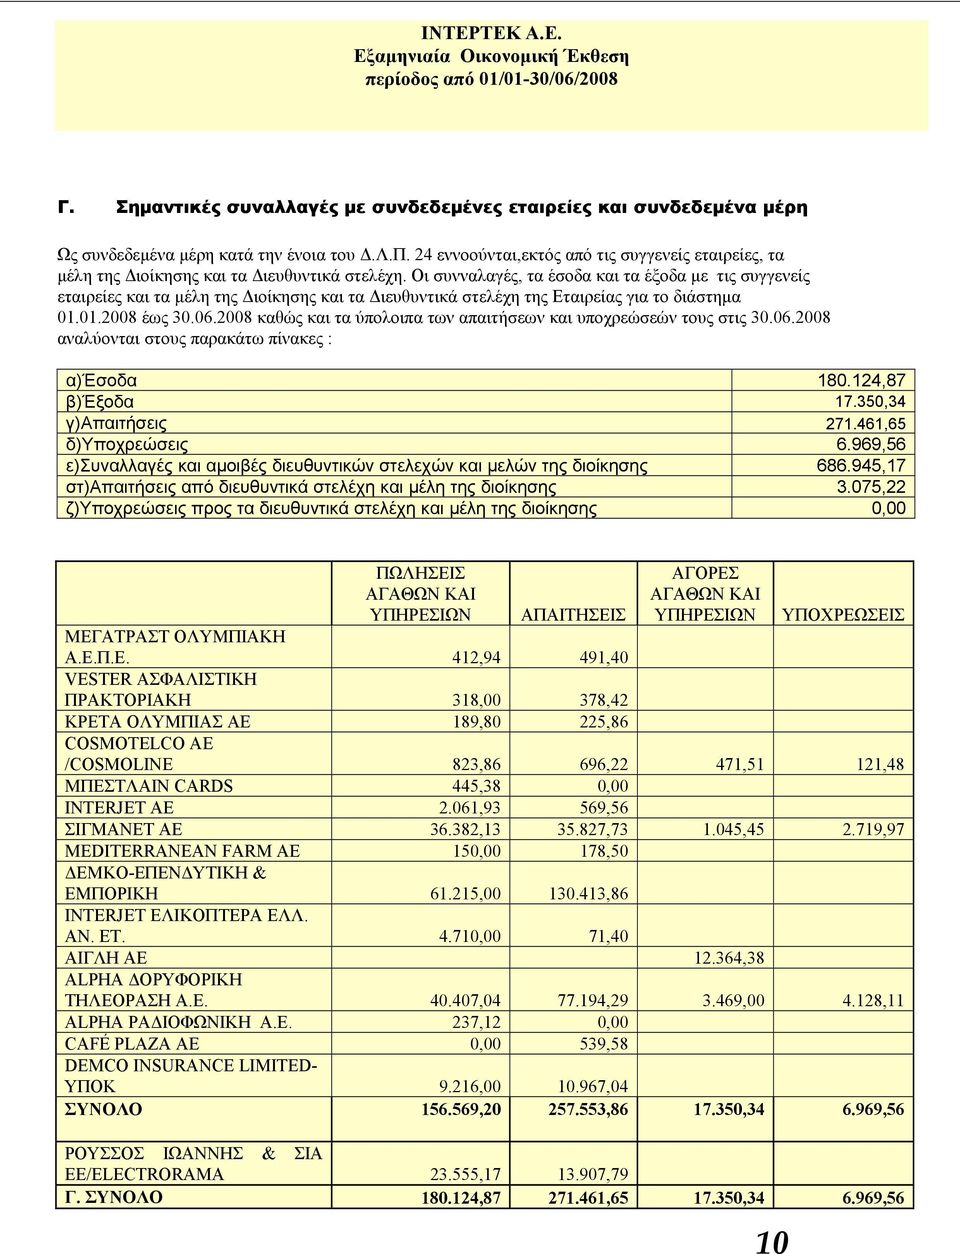 Οι συνναλαγές, τα έσοδα και τα έξοδα με τις συγγενείς εταιρείες και τα μέλη της Διοίκησης και τα Διευθυντικά στελέχη της Εταιρείας για το διάστημα 01.01.2008 έως 30.06.